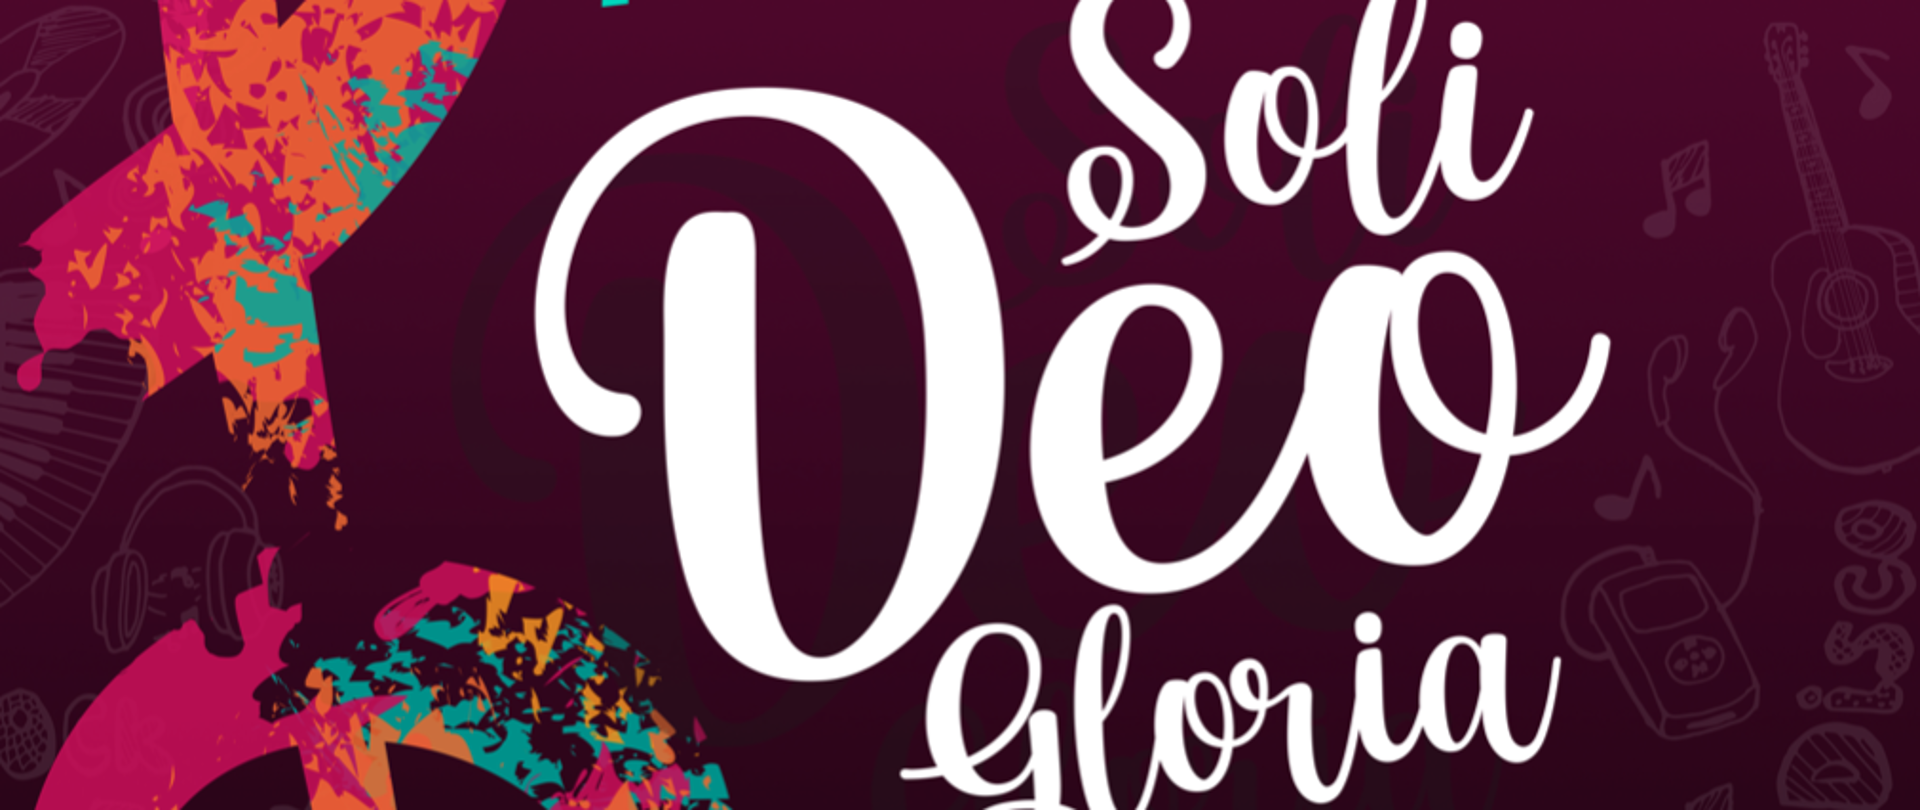 Wielokolorowy plakat koncertu "Soli Deo Gloria", po lewej motyw klucza wiolinowego, na środku, po prawej i na dole informacje dotyczące koncertu, całość utrzymana w odcieniach ciemnej czerwieni i różu